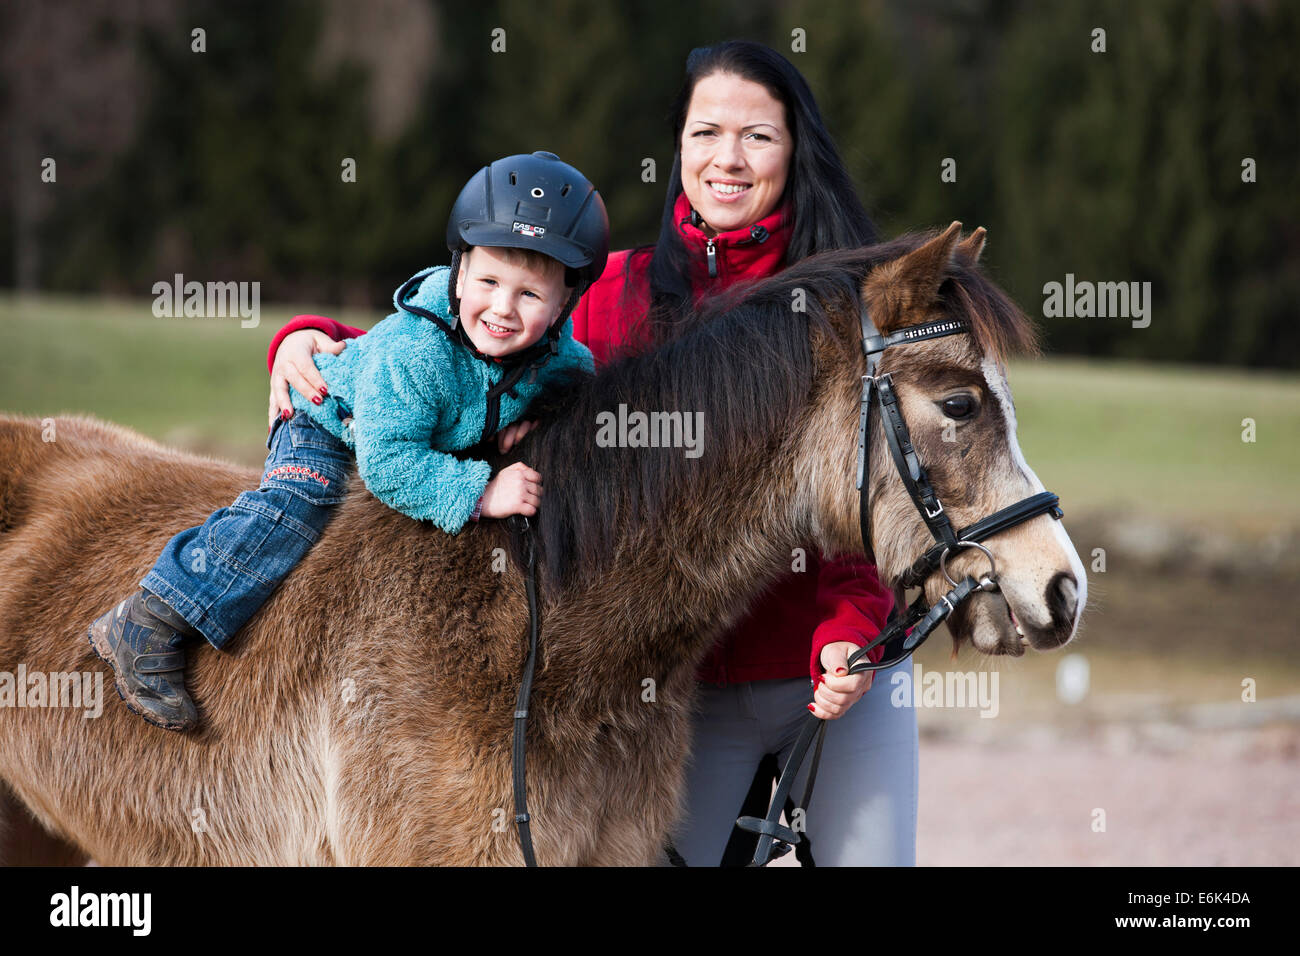 Jeune enfant portant un casque assis bareback sur un poney, dun, avec une patte, avec un professeur d'équitation, Tyrol, Autriche Banque D'Images